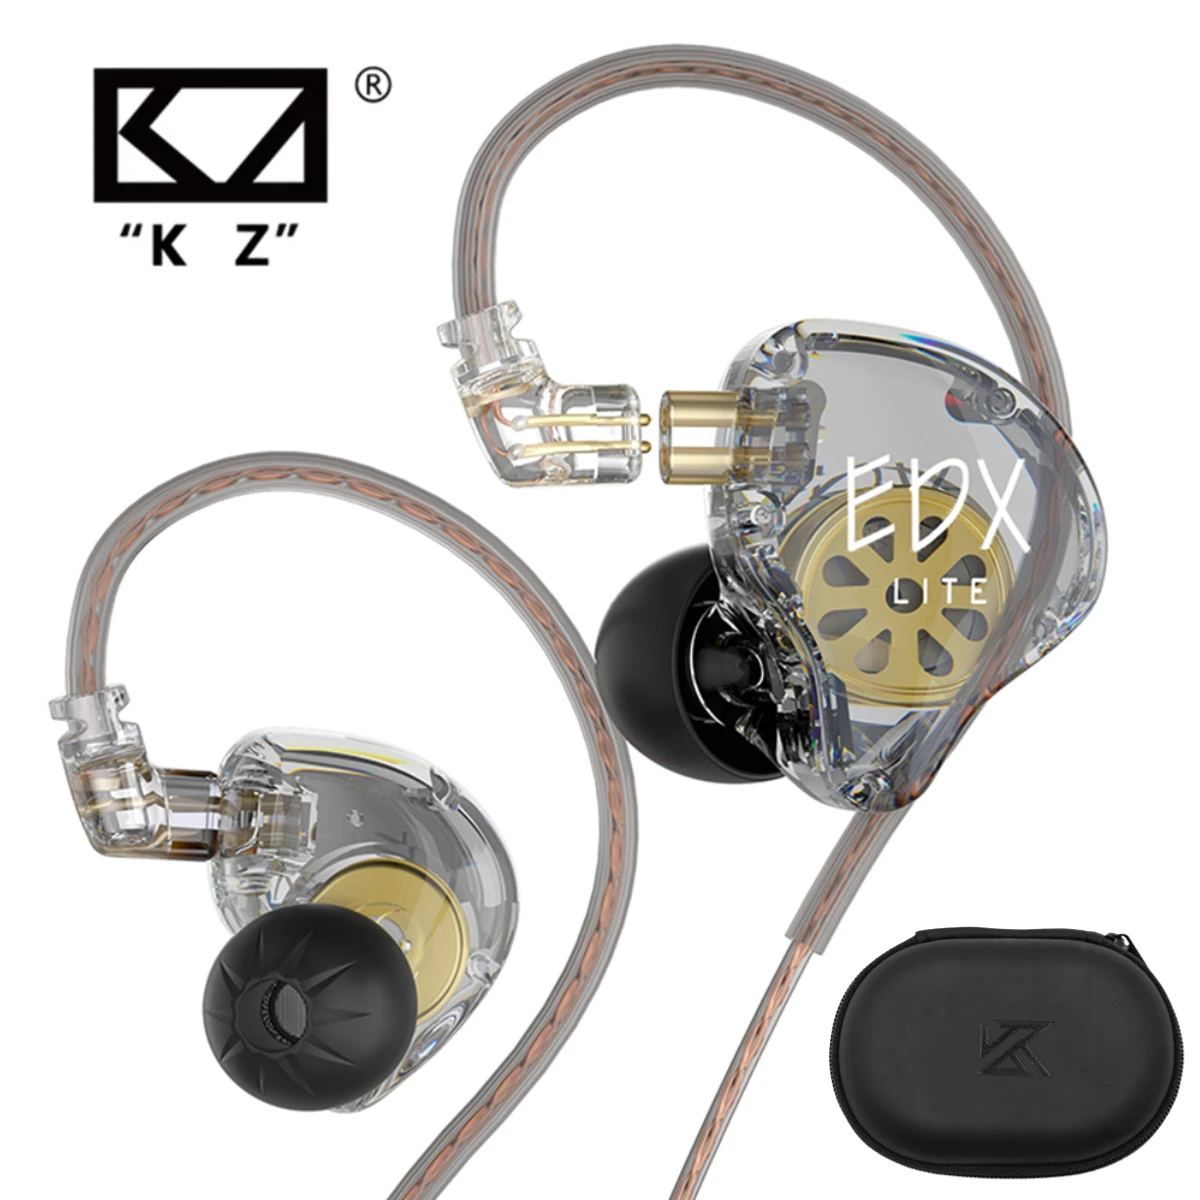 Audifonos Kz Edx Pro Con Cancelación y Micrófono Integrado KZ